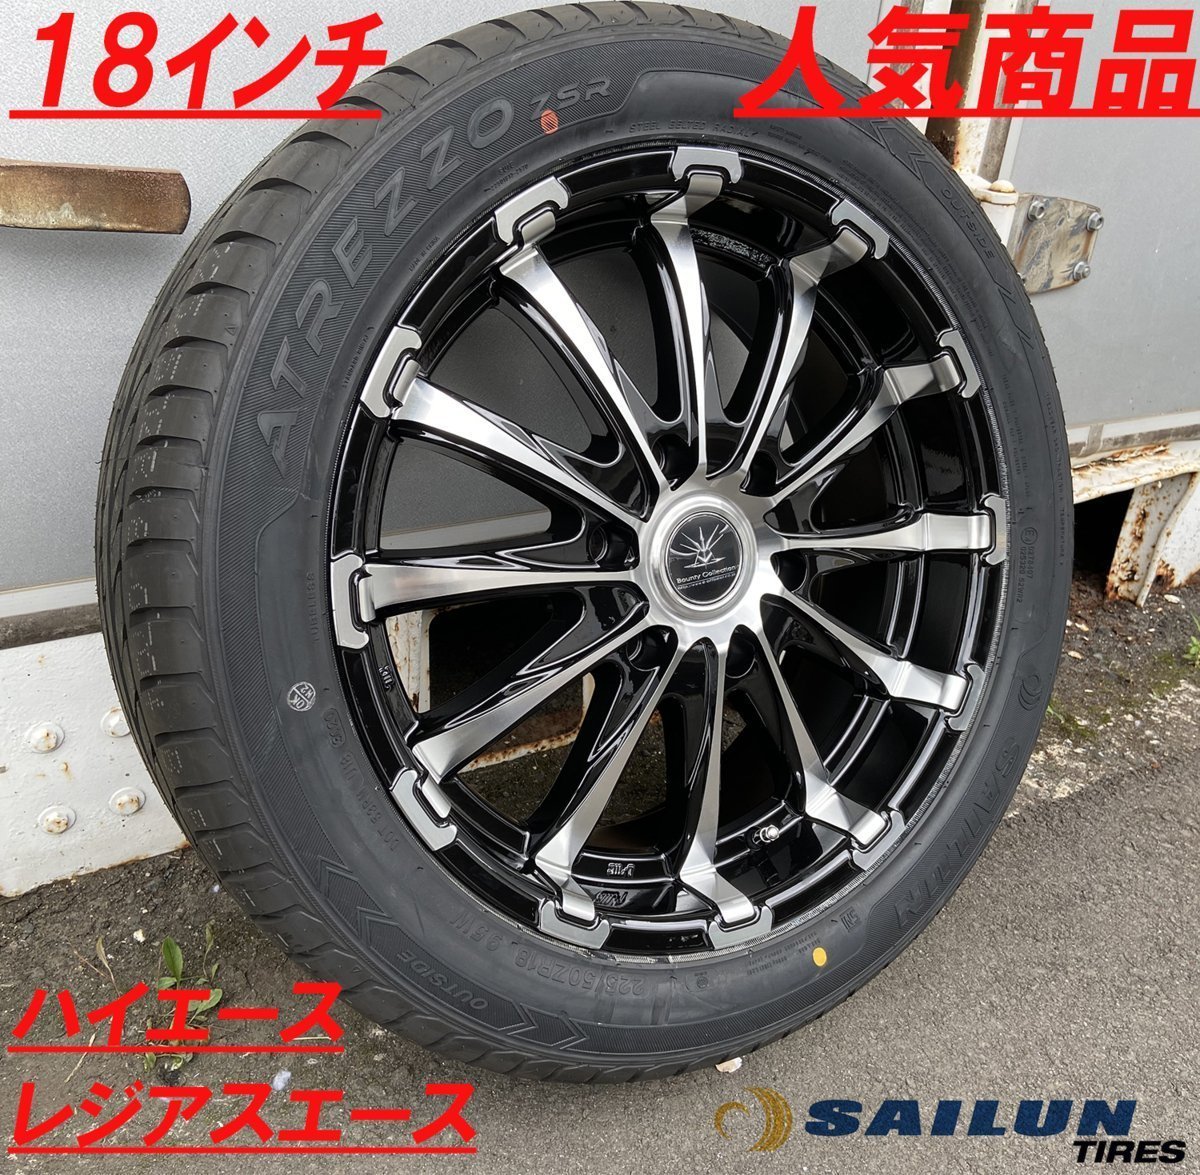 SALE品 新品タイヤホイールセット ハイエース レジアスエース 200系 18インチ BD12 特選タイヤ 225/50R18_画像2